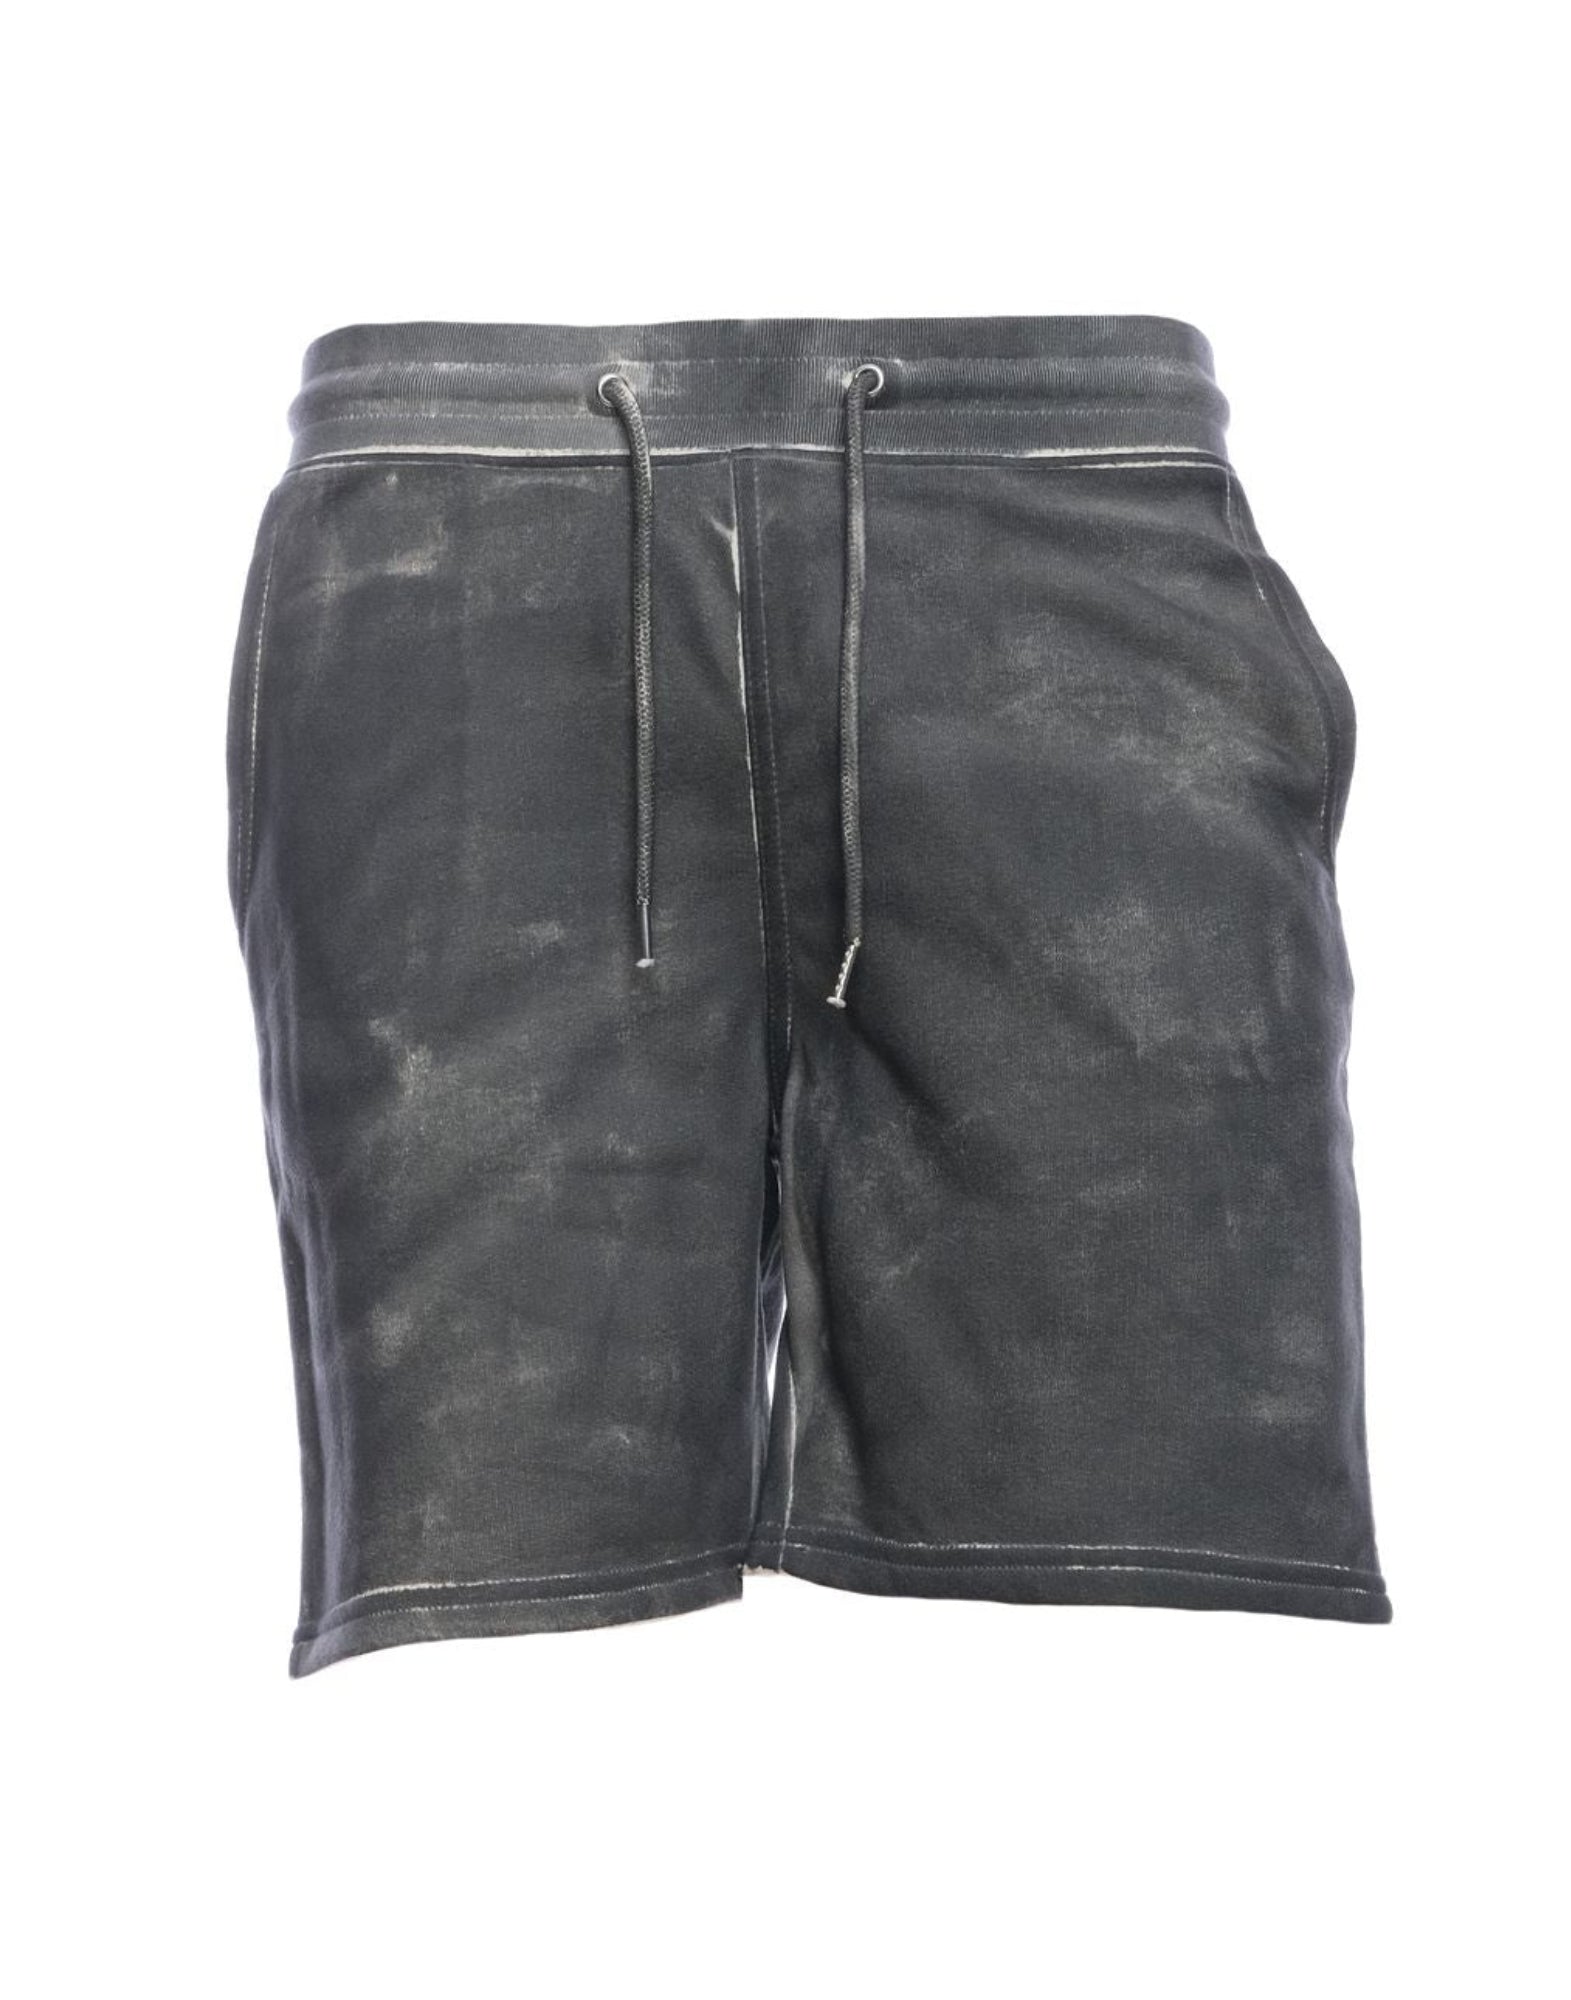 Pantalones cortos para hombre ONELAB Dragon 008 Black